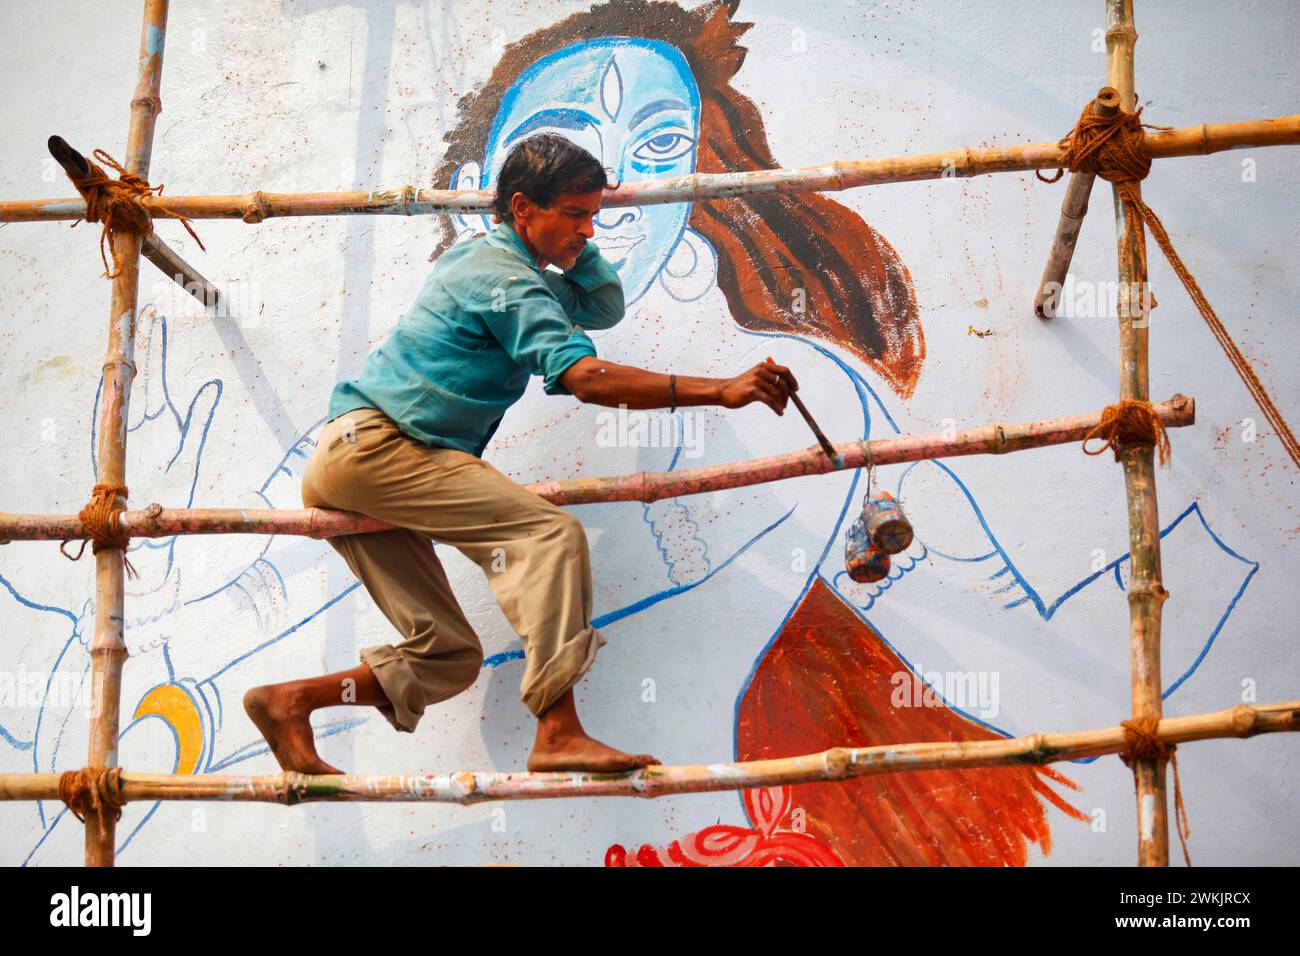 Un artiste peignant la figure de la divinité indienne 'Shiva' dans une rue de Varanasi, Uttar Pradesh, Inde. Banque D'Images